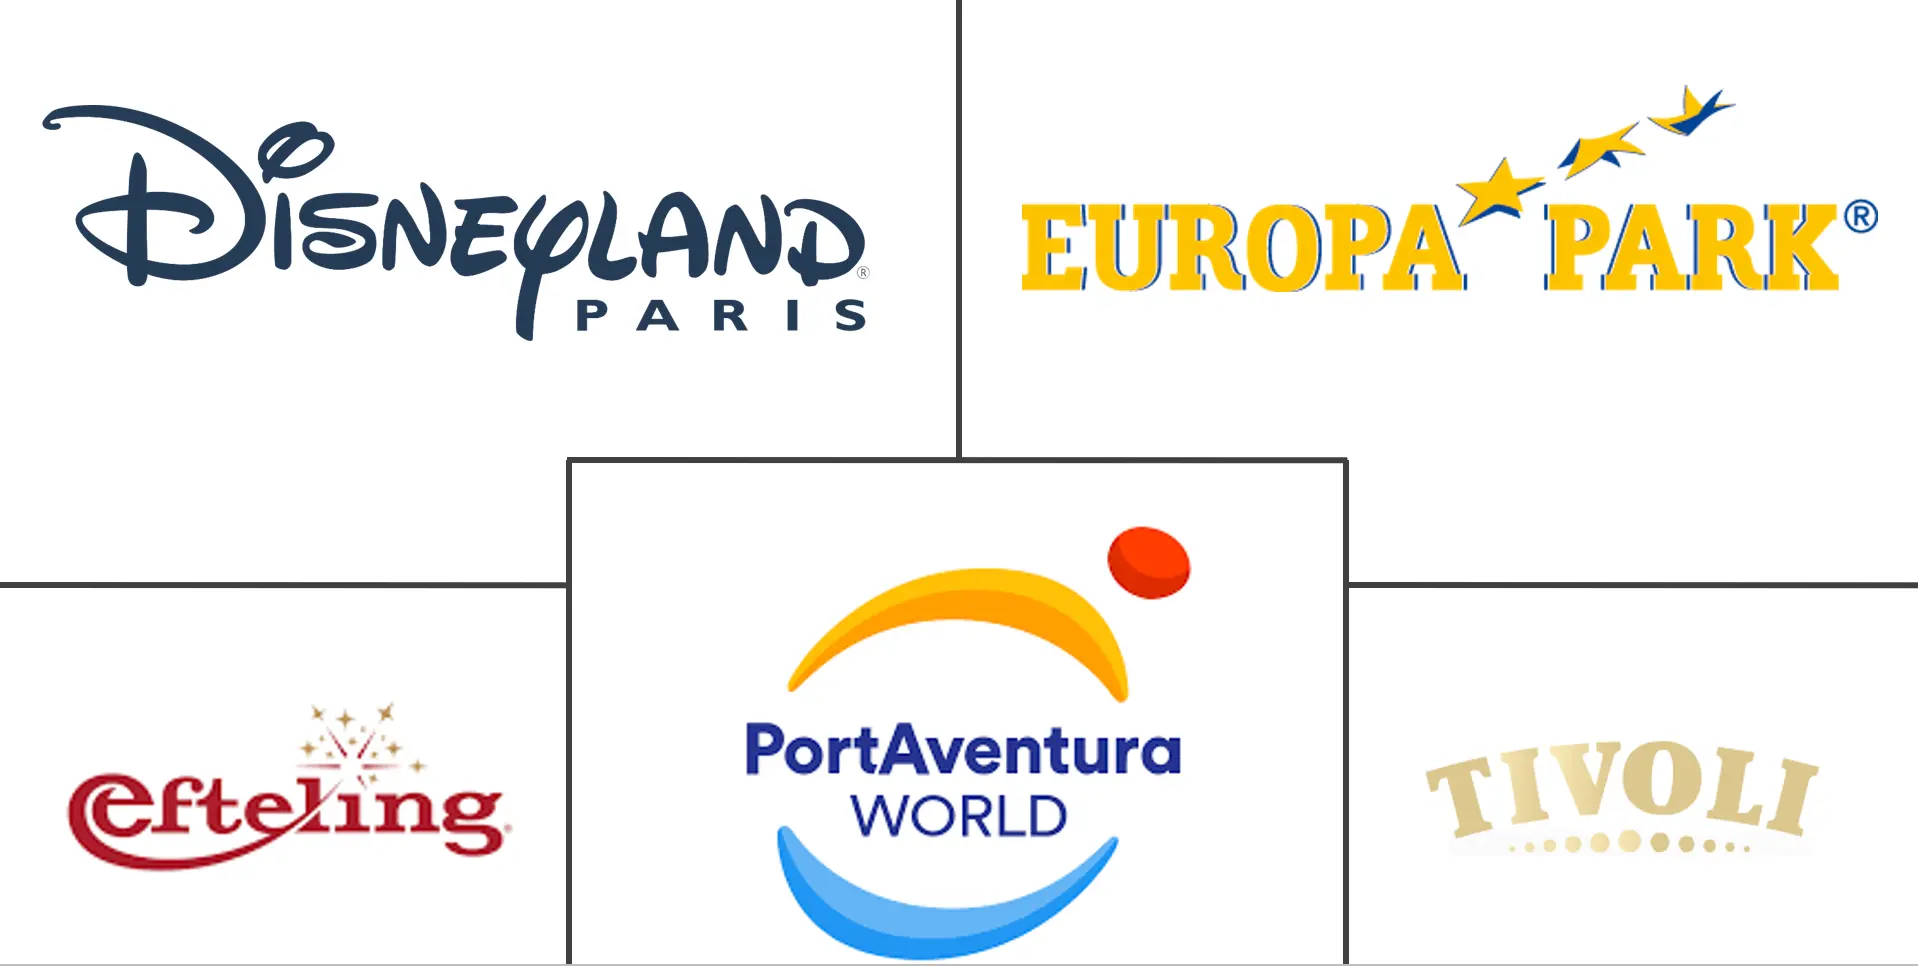 Europe Amusement Parks Market Major Players